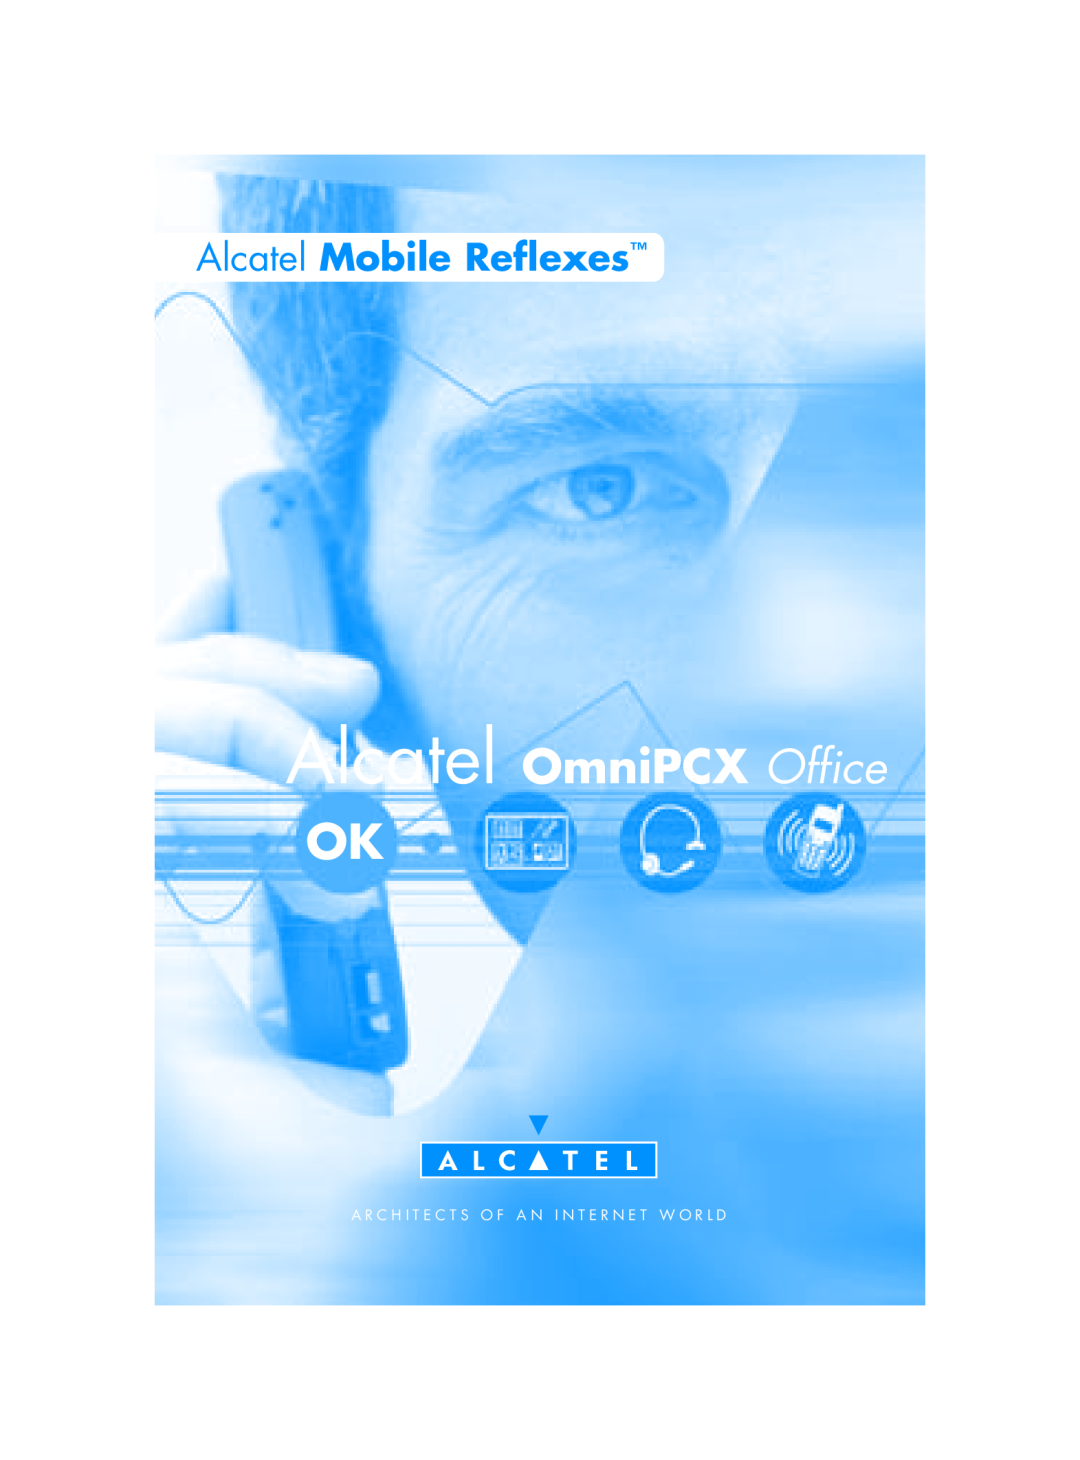 Alcatel-Lucent Mobile Reflexes 100 manual Alcatel OmniPCX Office, Alcatel Mobile Reflexes 